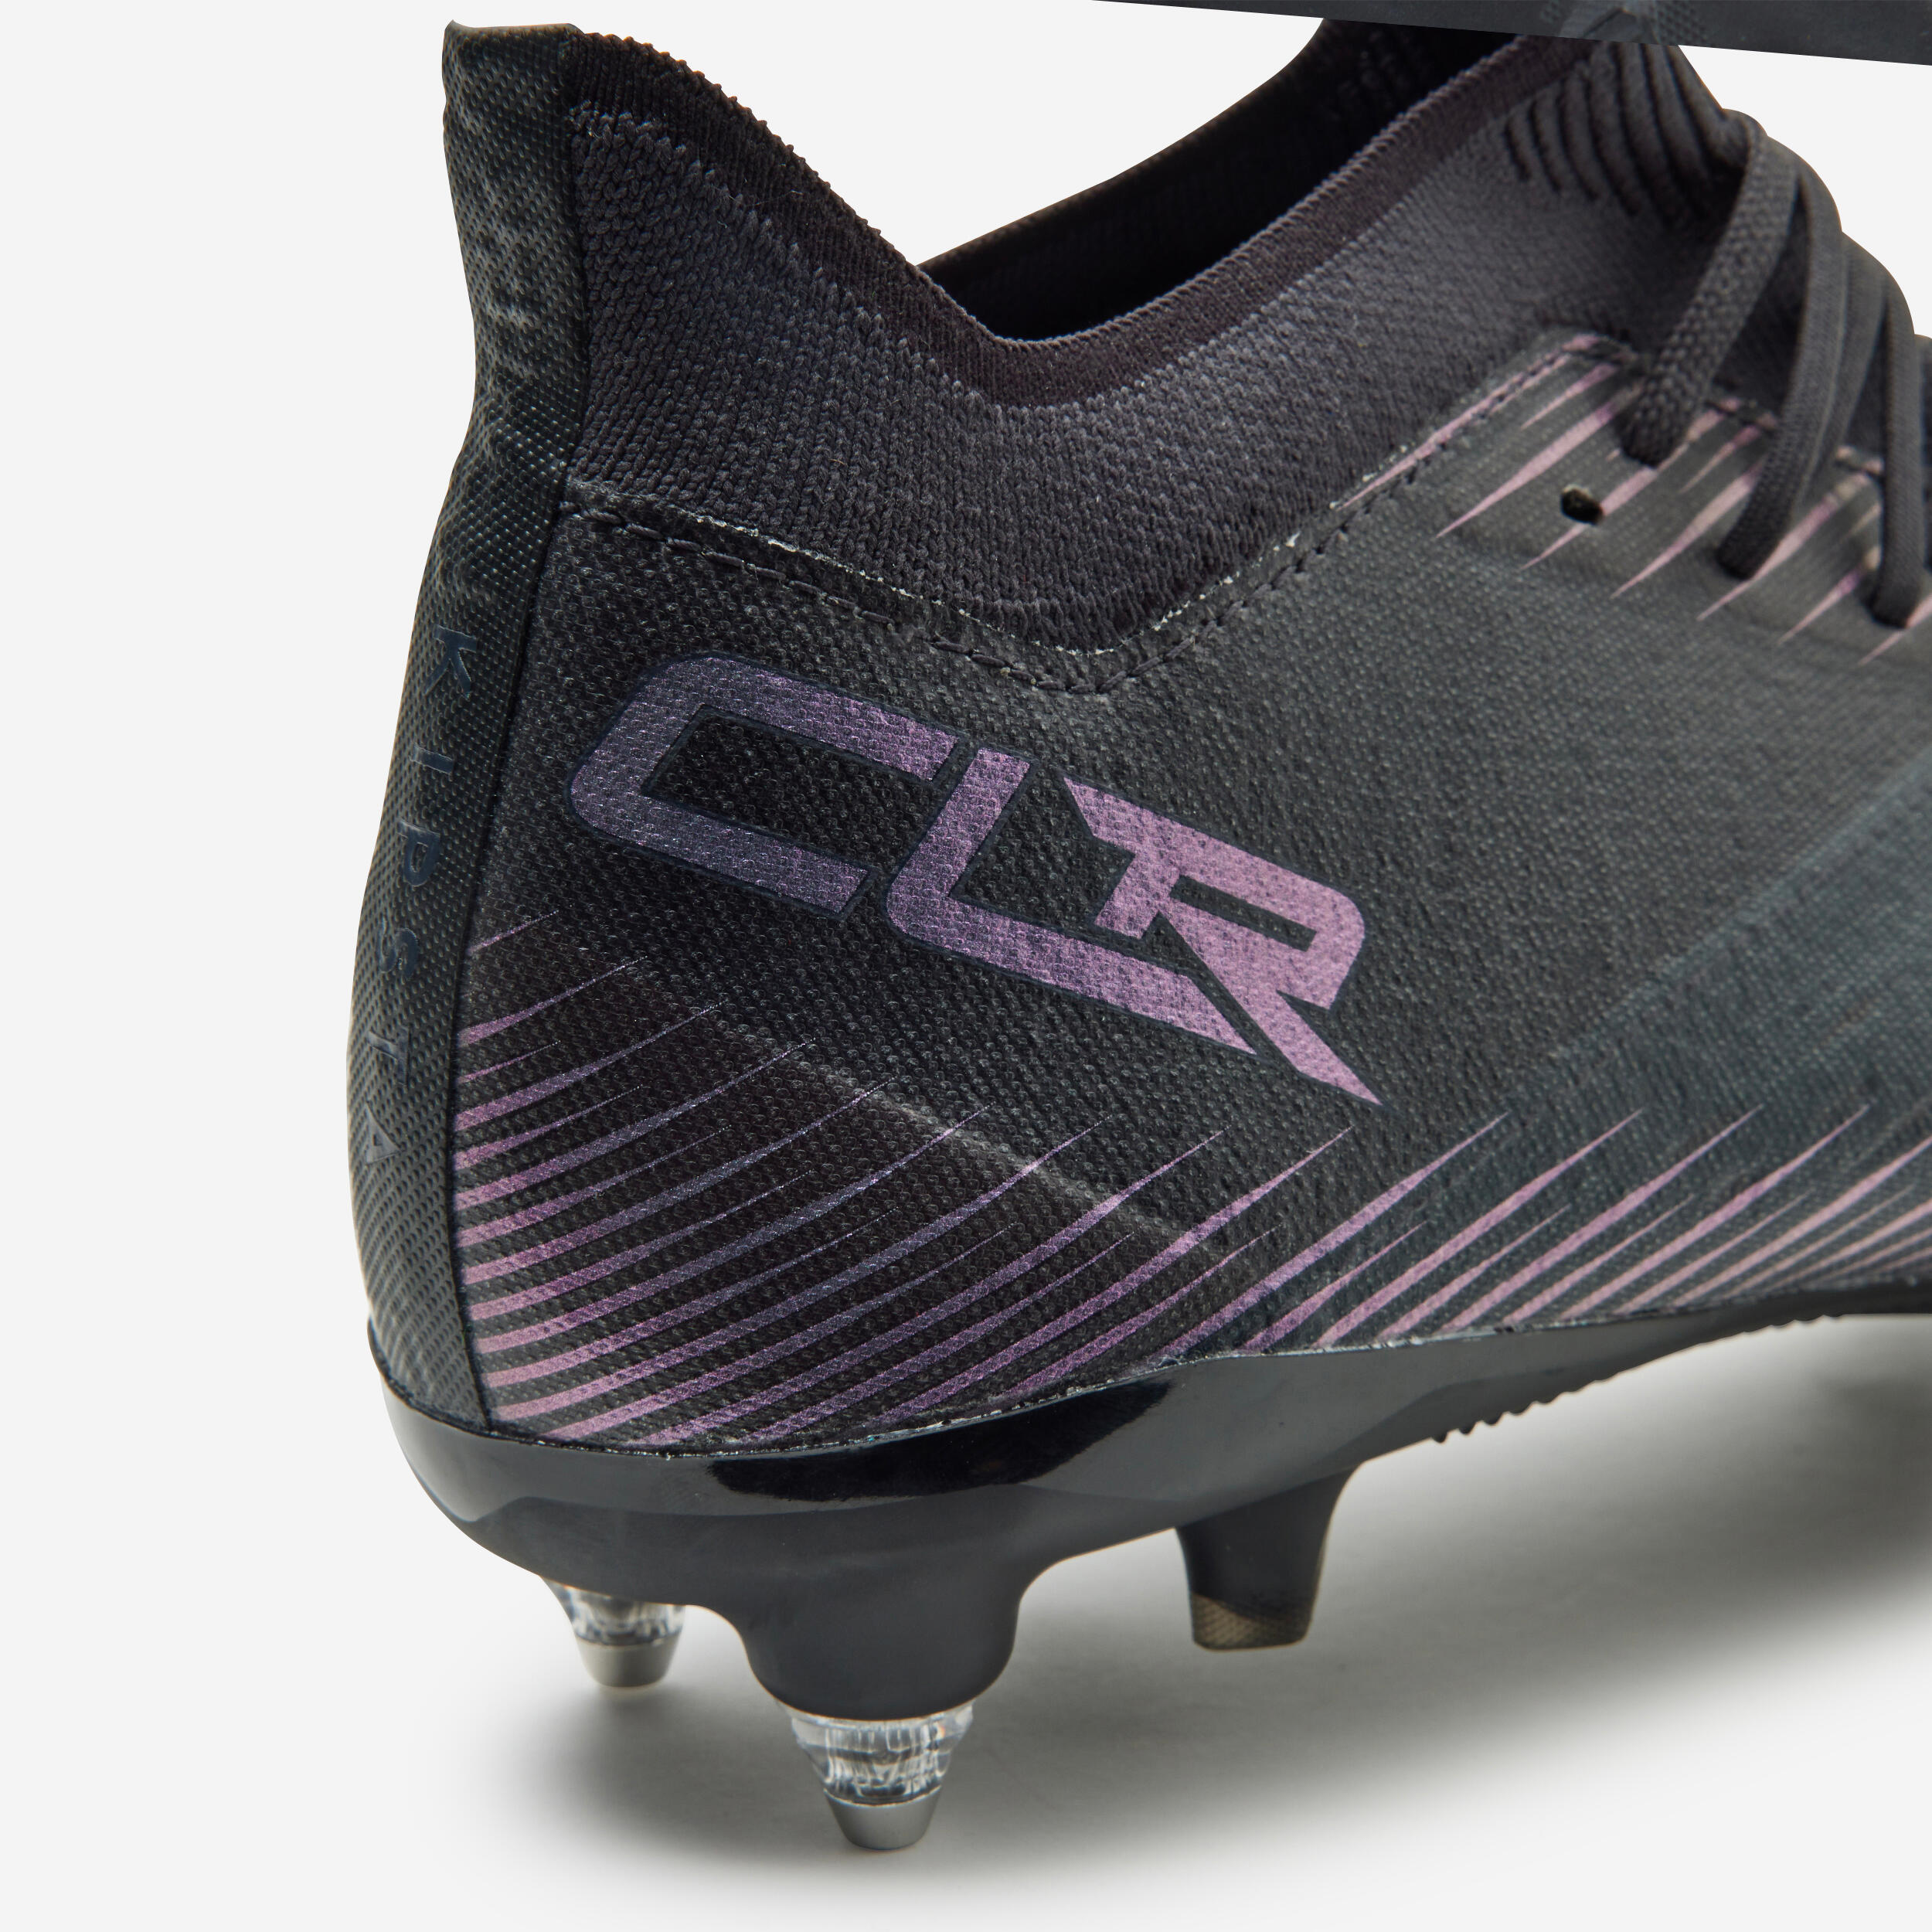 Adult Hybrid Diamond Stud Football Boots CLR SG - Black 3/15